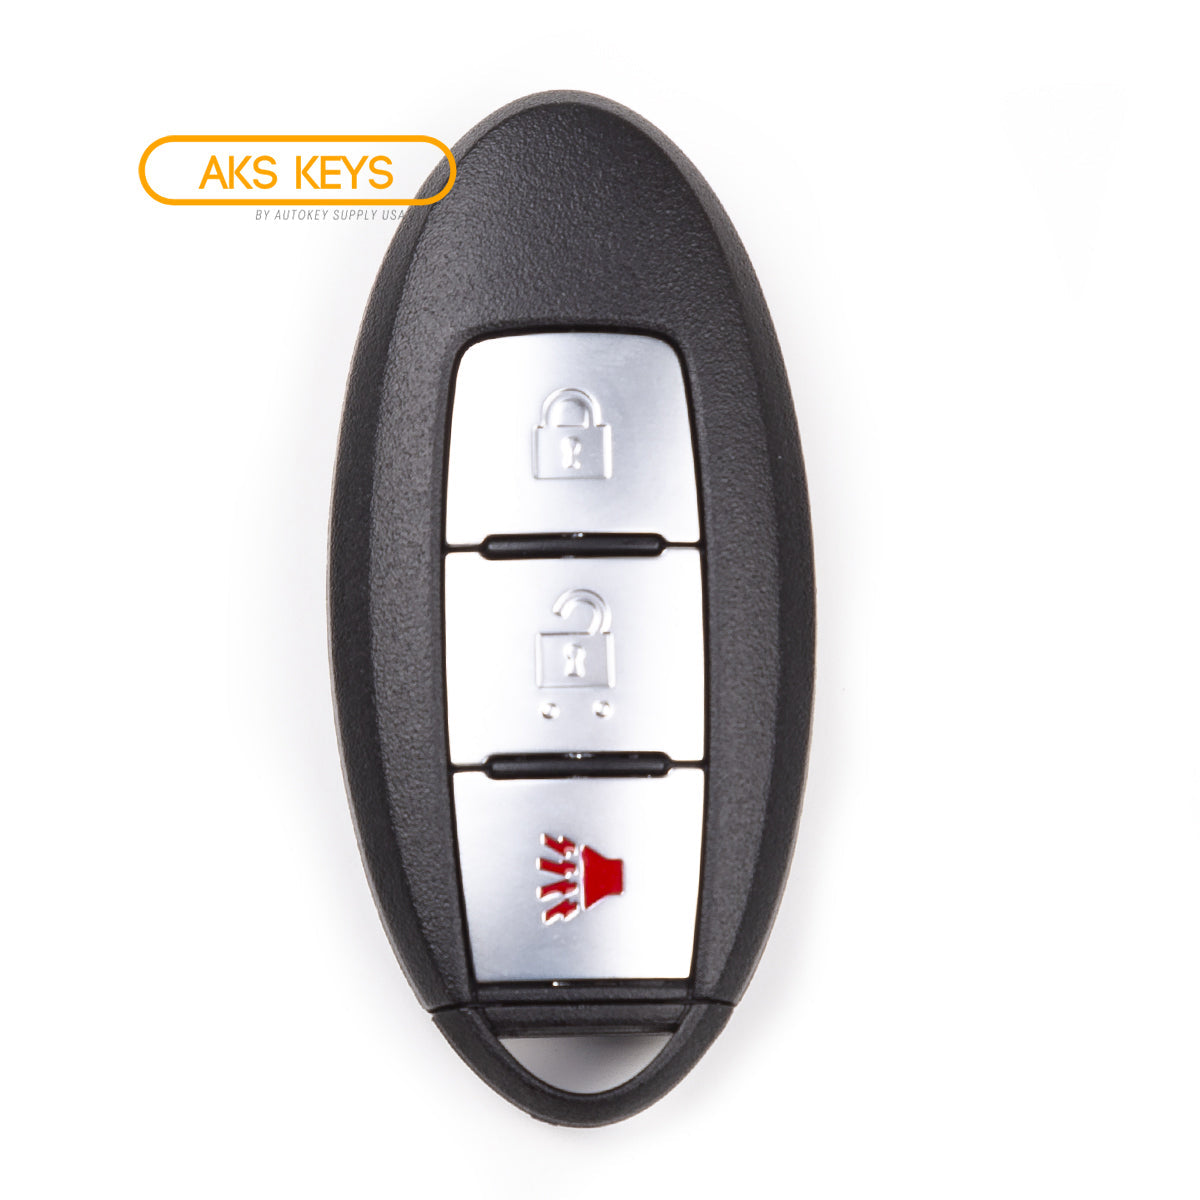 2012 Nissan Leaf Smart Key 3 Buttons Fob FCC# CWTWB1U808 - Aftermarket